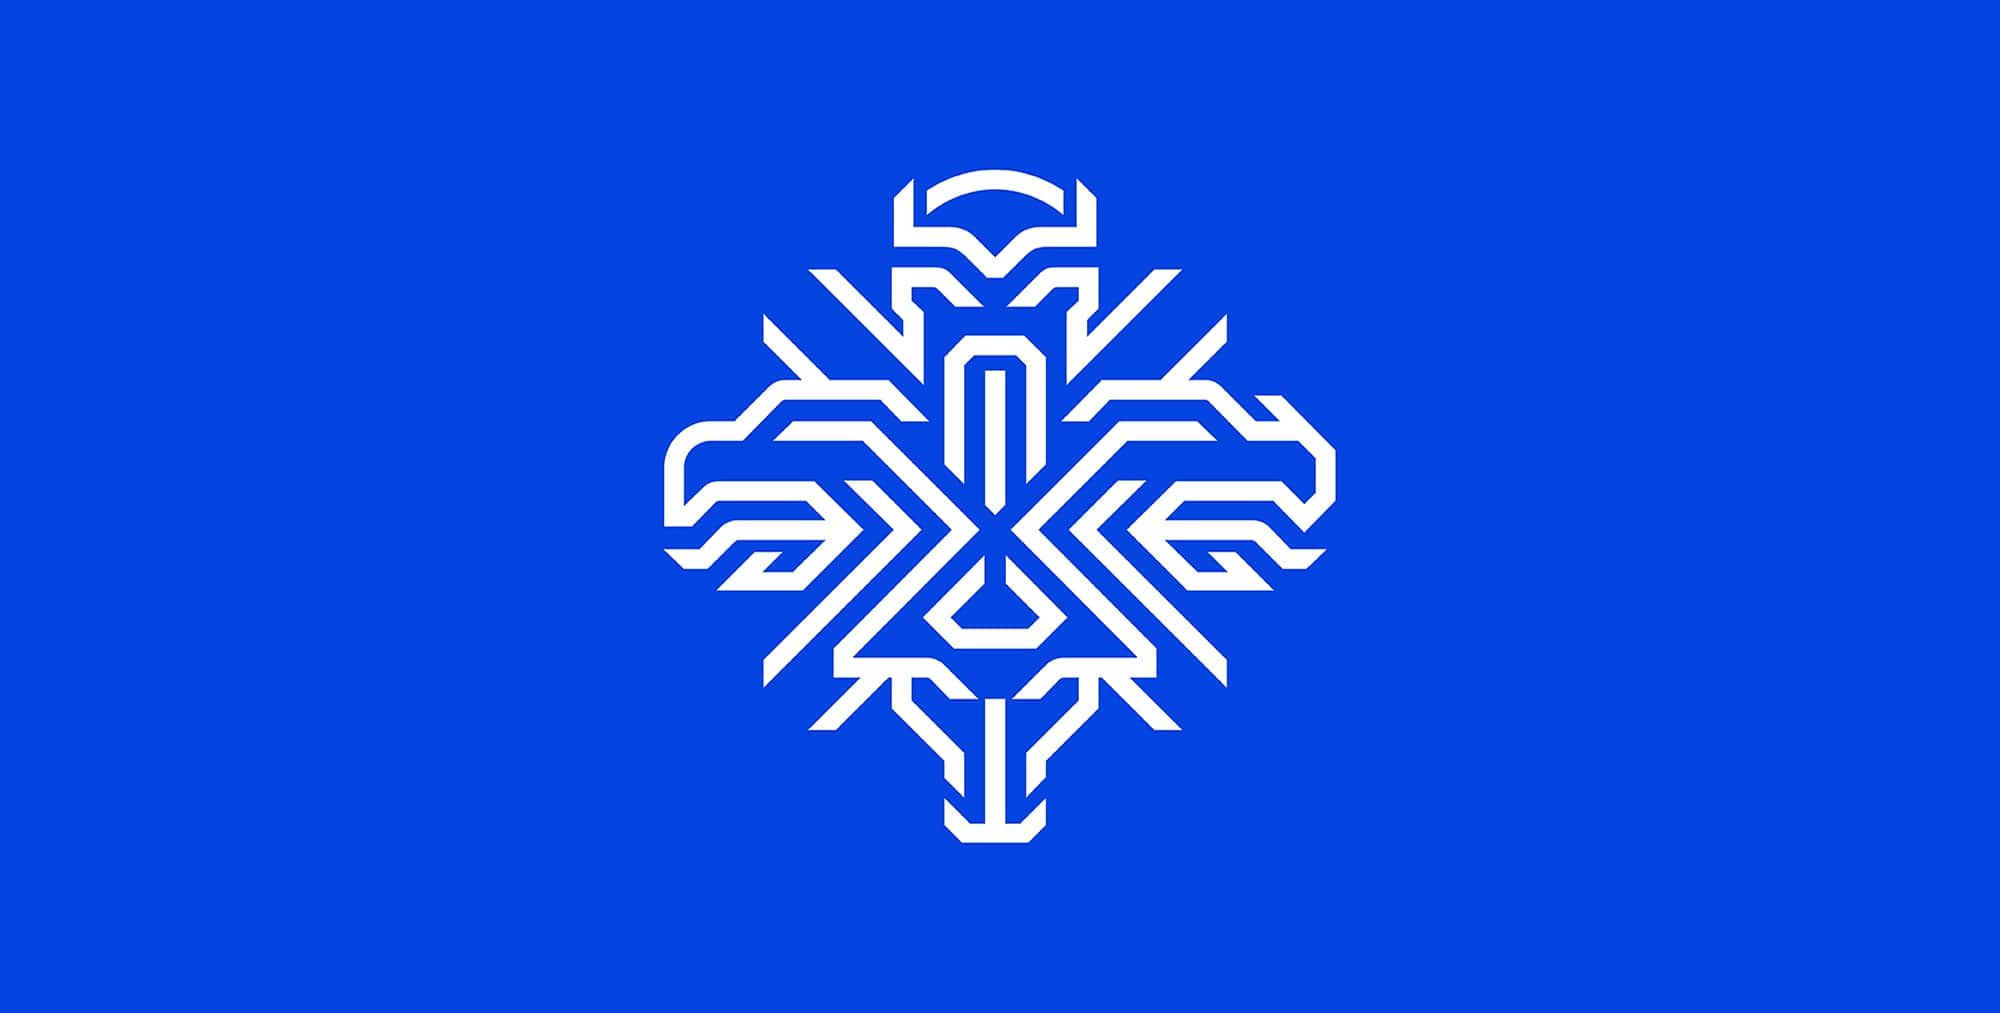 Un nuovo stemma per la nazionale di calcio dell’Islanda - Cover